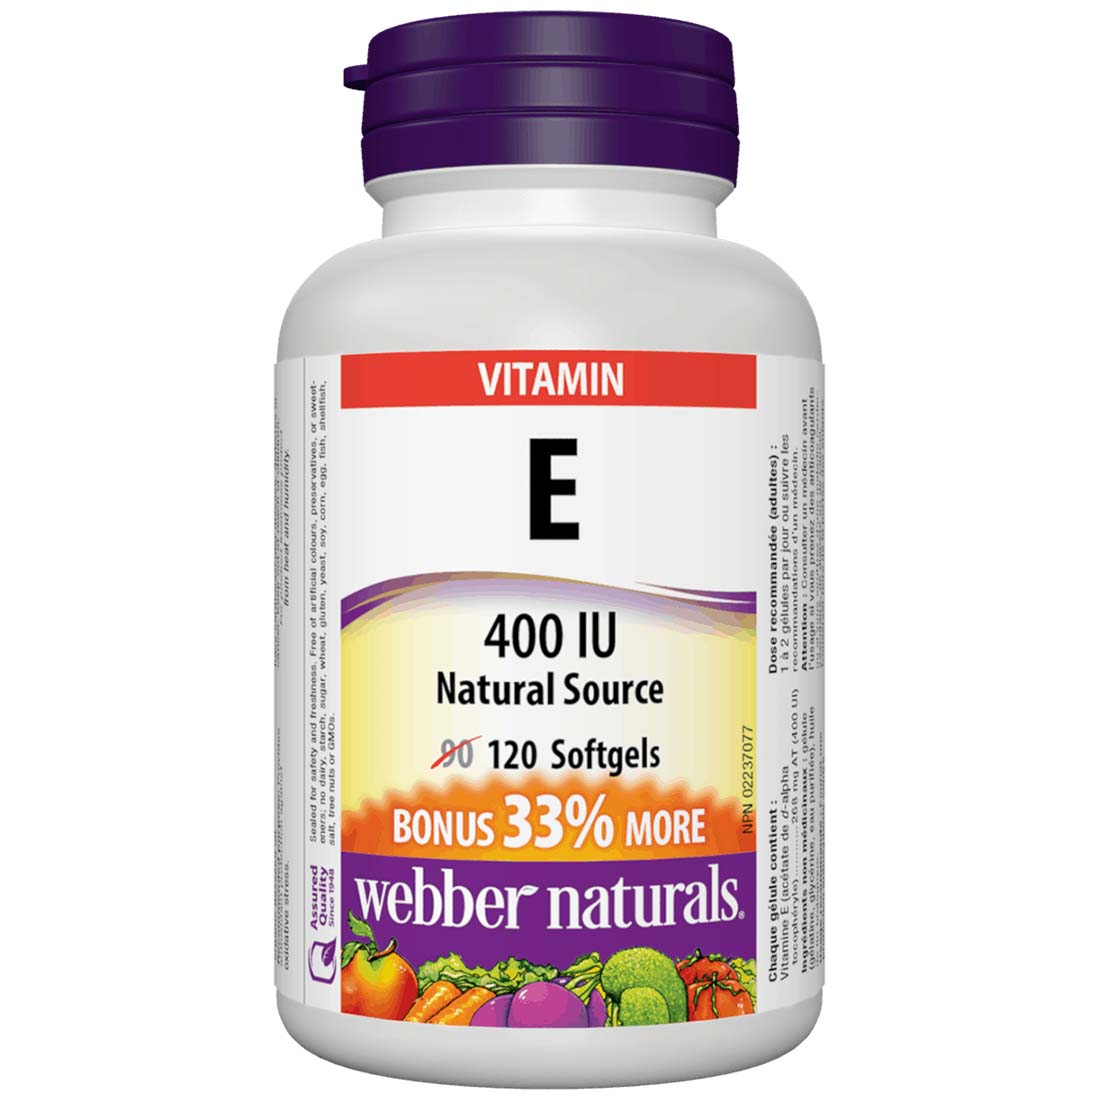 Webber Naturals Vitamin E, Natural Source, 400IU, BONUS! 33% More, 90+30 Softgels